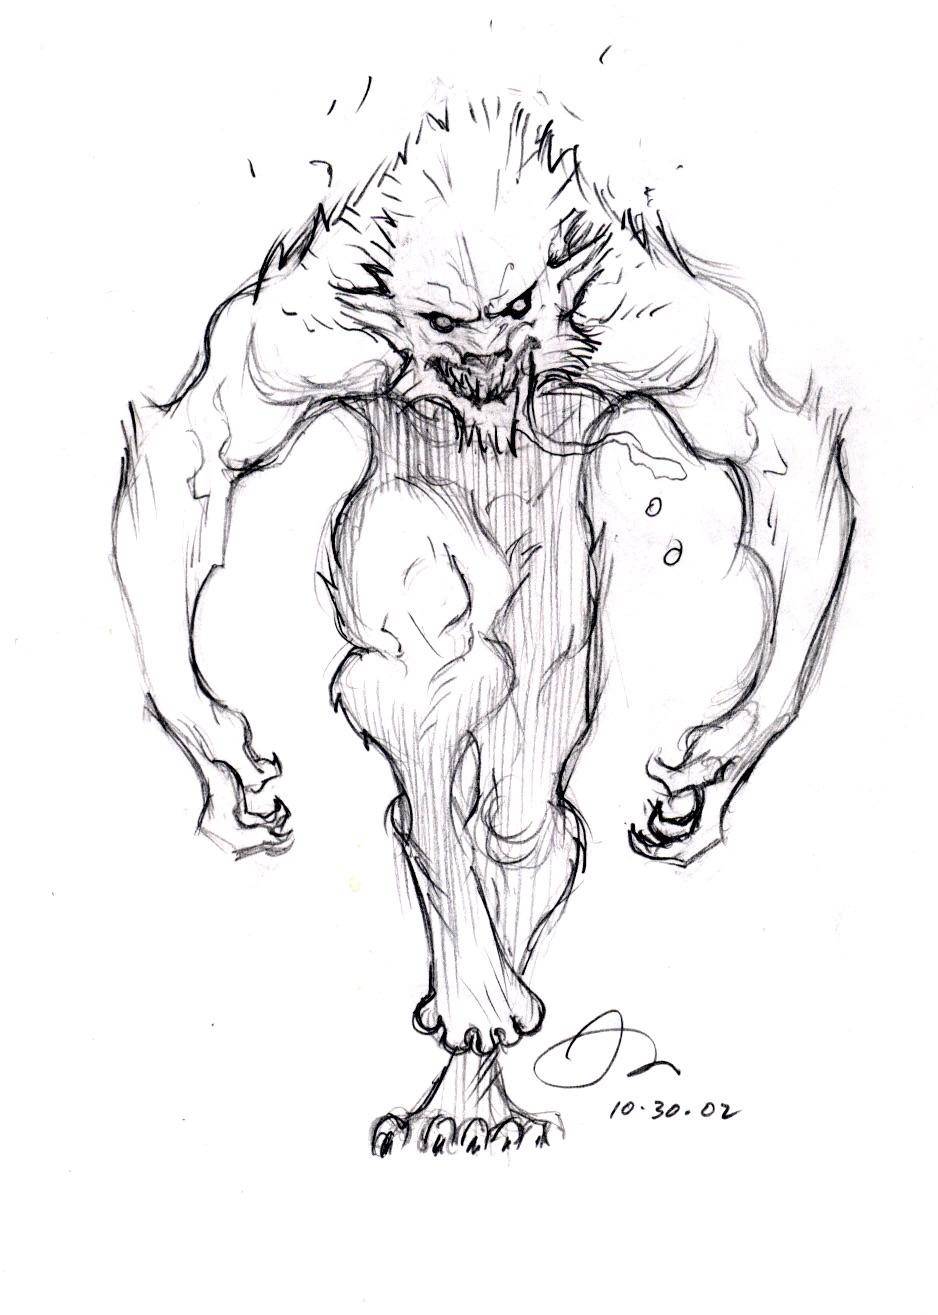 Van Helsing 2004 Official werewolf concept art | Scrolller